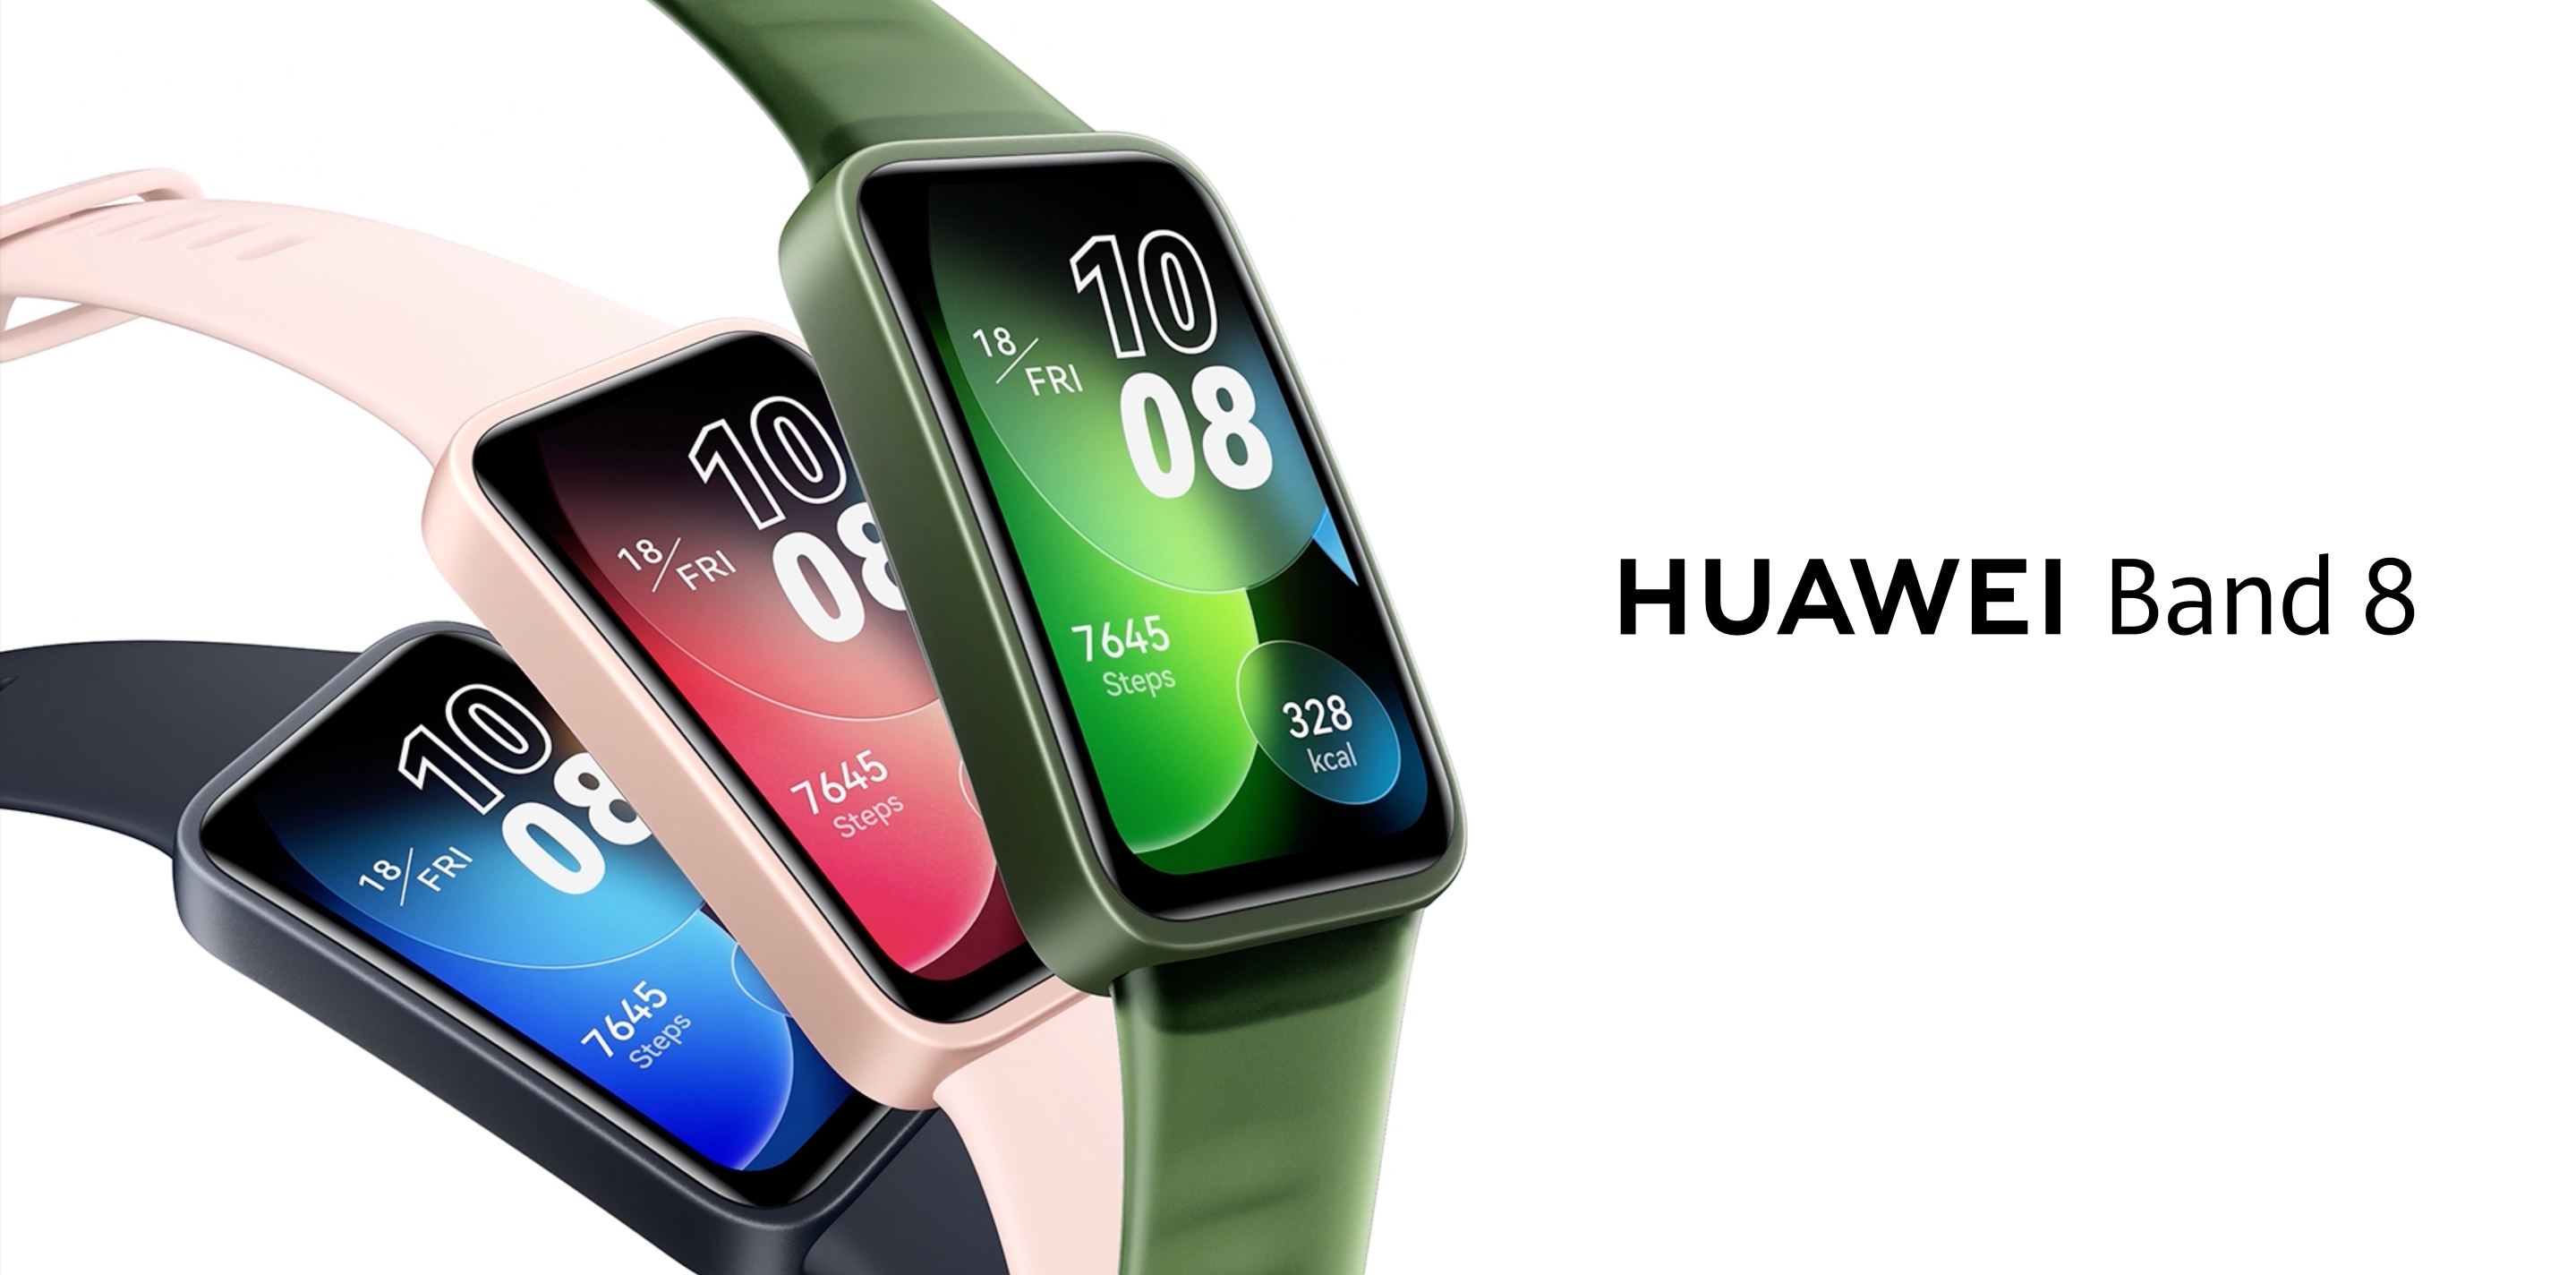 Huawei Band 8 mit AMOLED-Bildschirm, SpO2-Sensor und bis zu 14 Tagen Akkulaufzeit außerhalb Chinas veröffentlicht